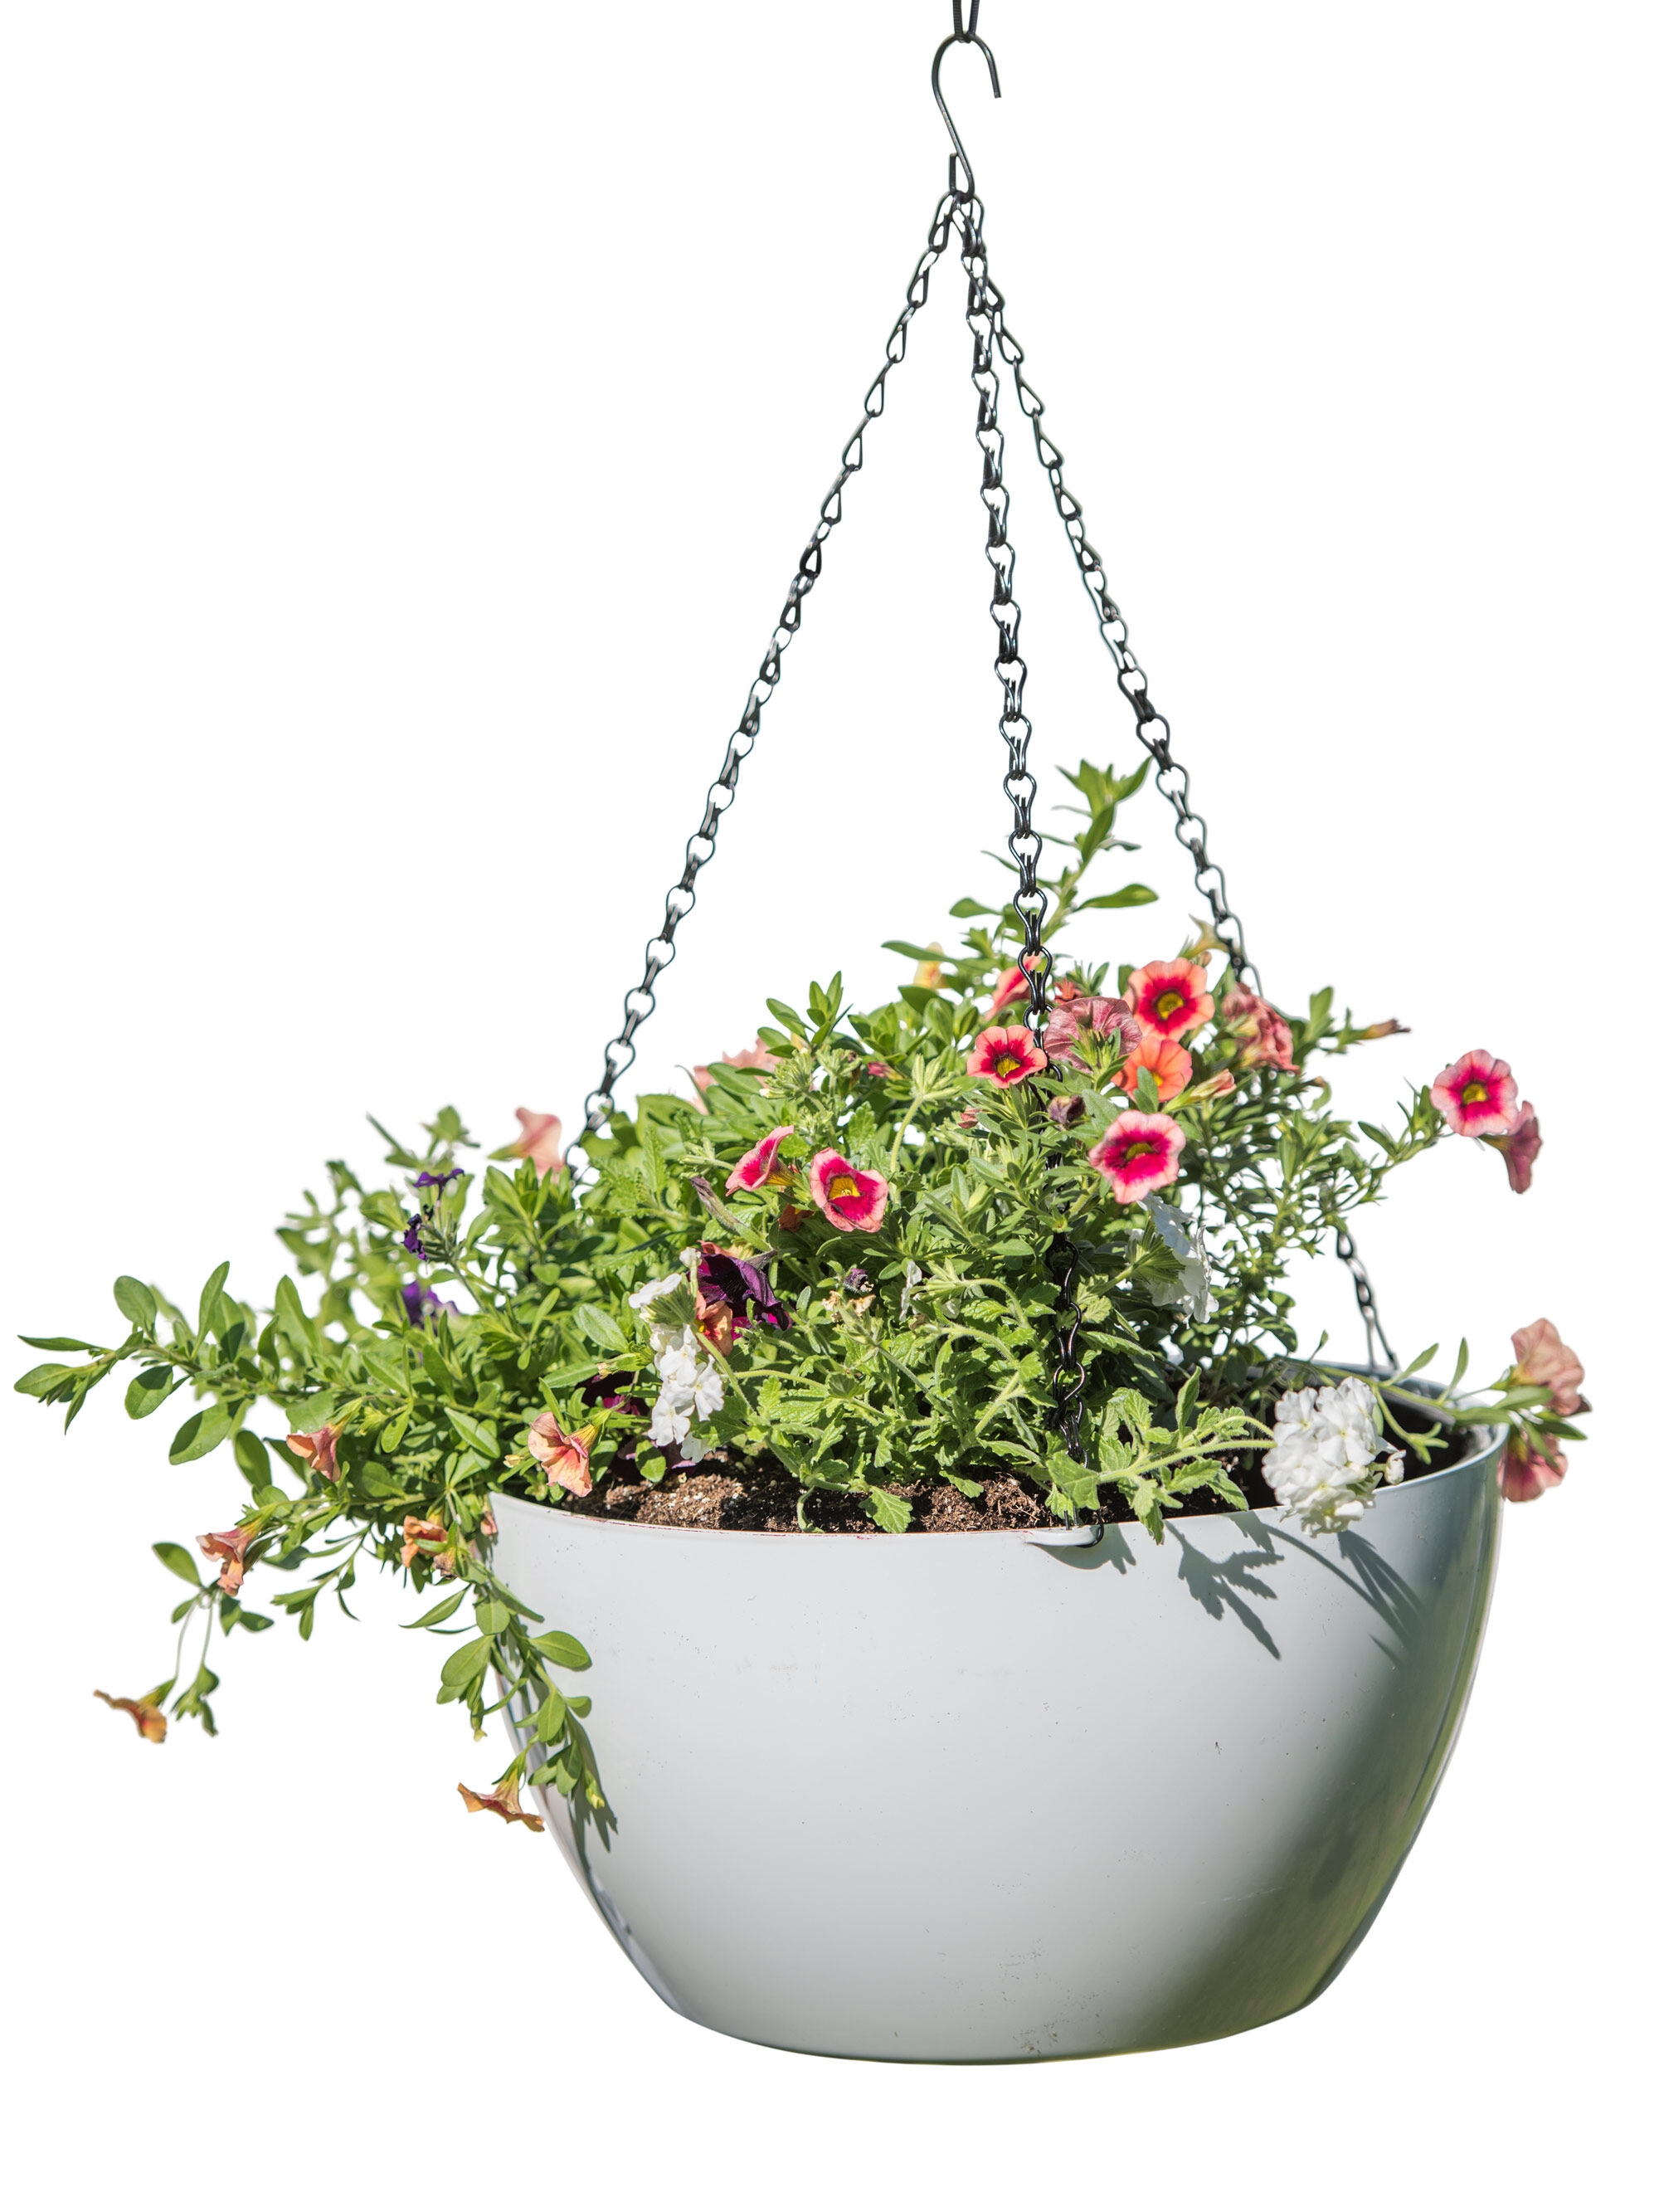 Viva Colorful Self-Watering Hanging Flower Basket | Gardeners.com